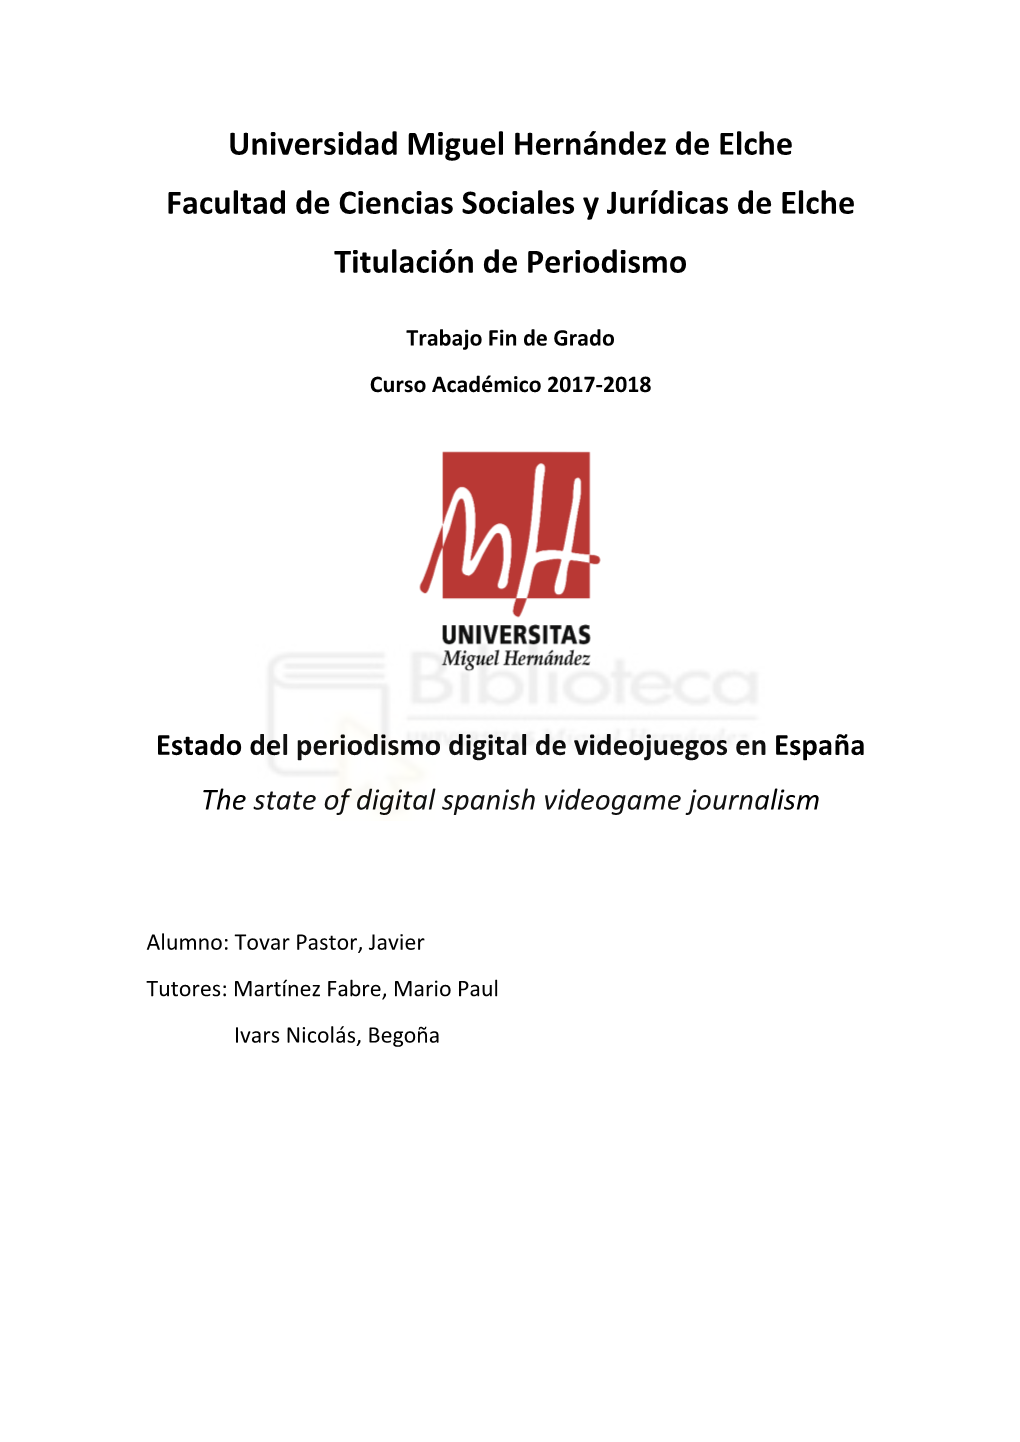 Estado Del Periodismo Digital De Videojuegos En España the State of Digital Spanish Videogame Journalism